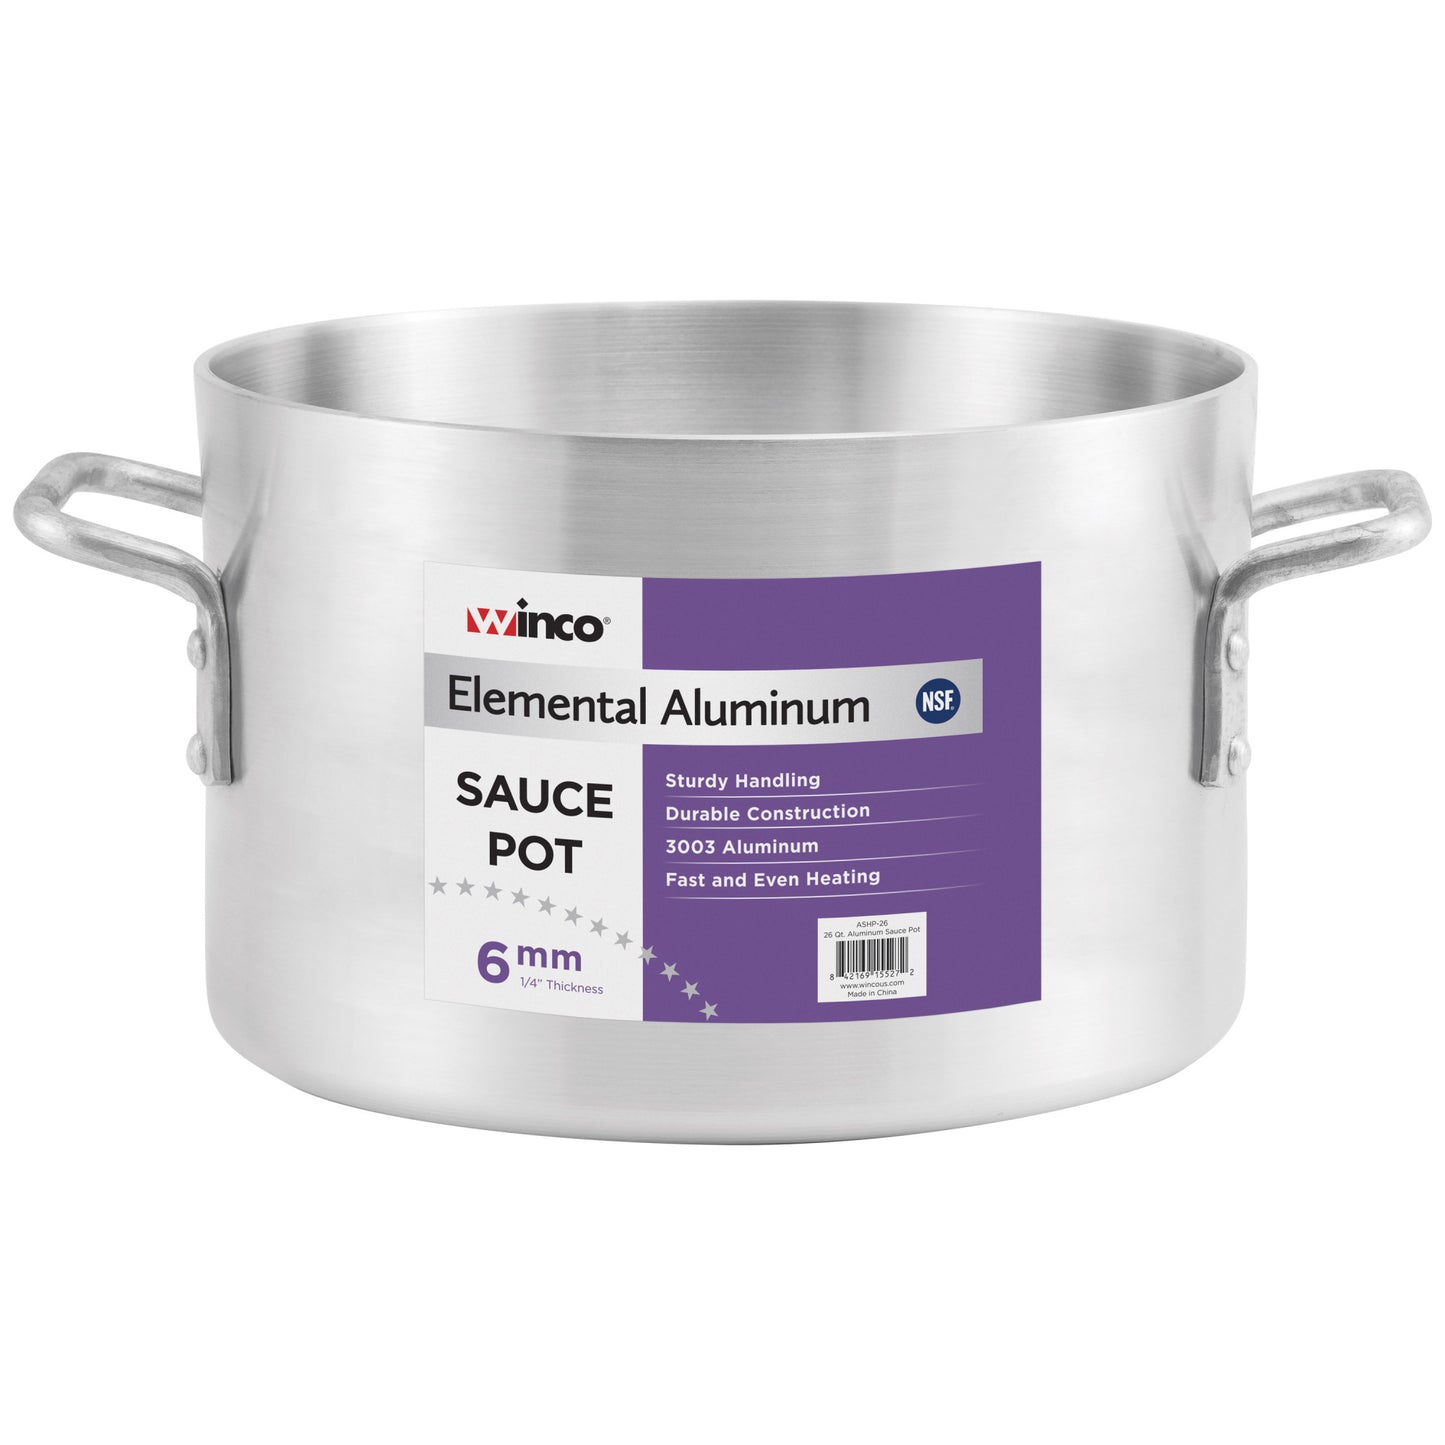 ASHP-08 - Elemental Aluminum Sauce Pot, 6mm - 8 Quart